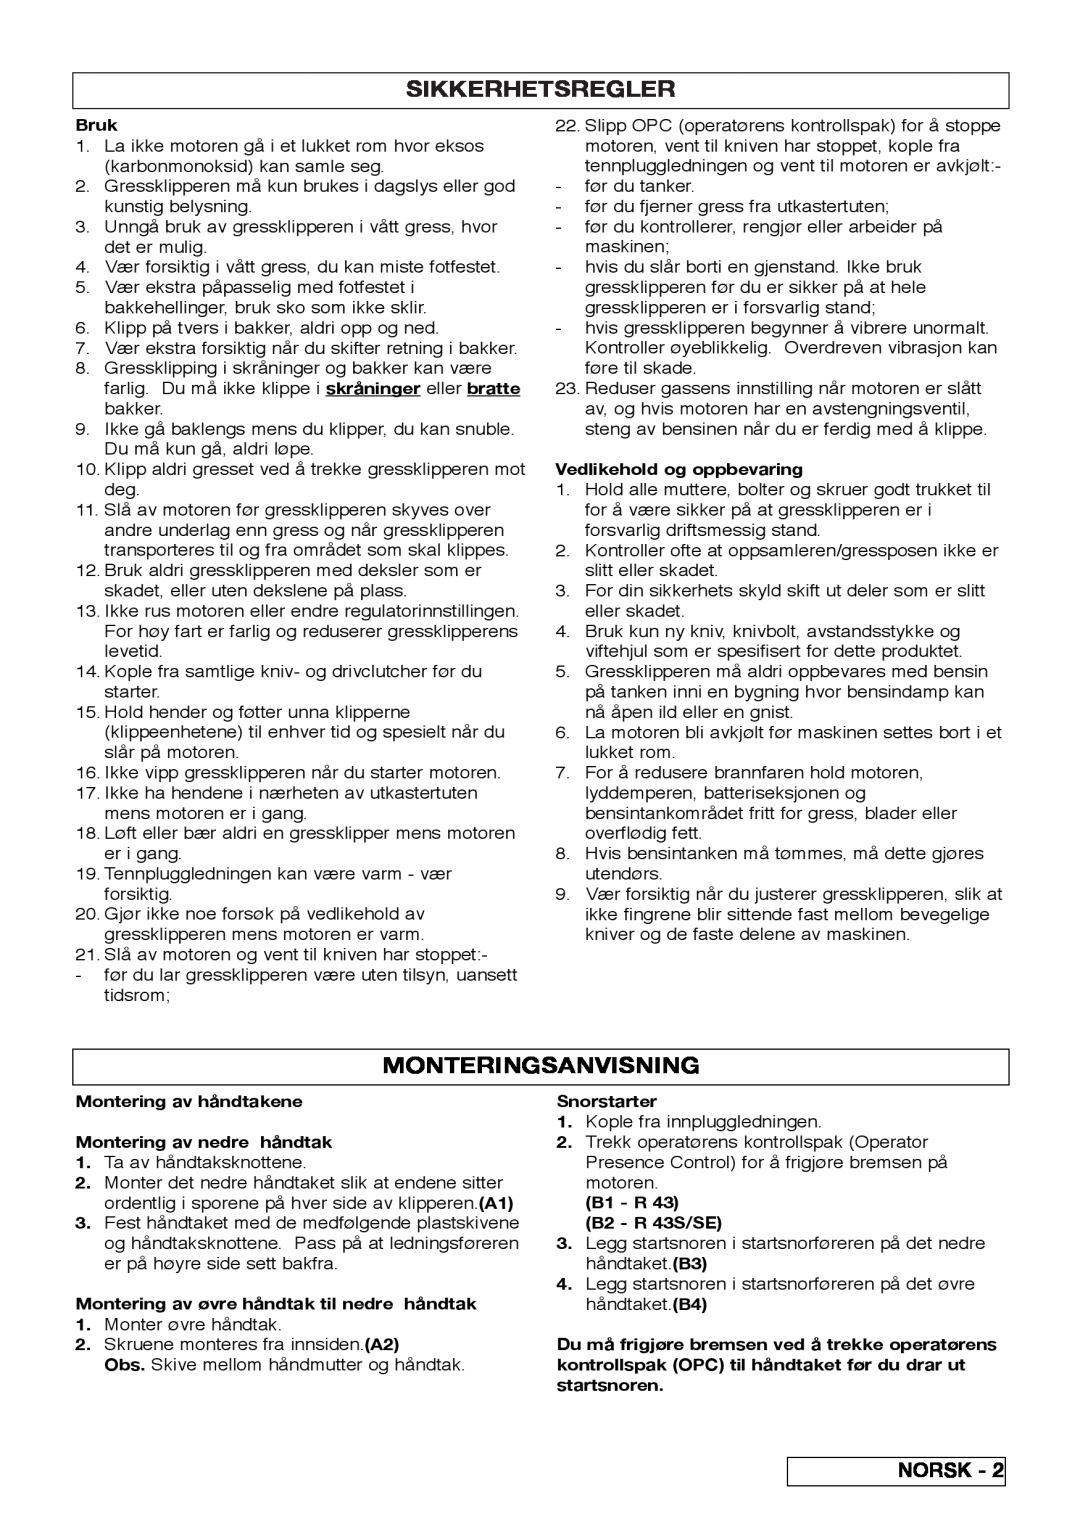 Husqvarna R 43SE manual Sikkerhetsregler, Monteringsanvisning 